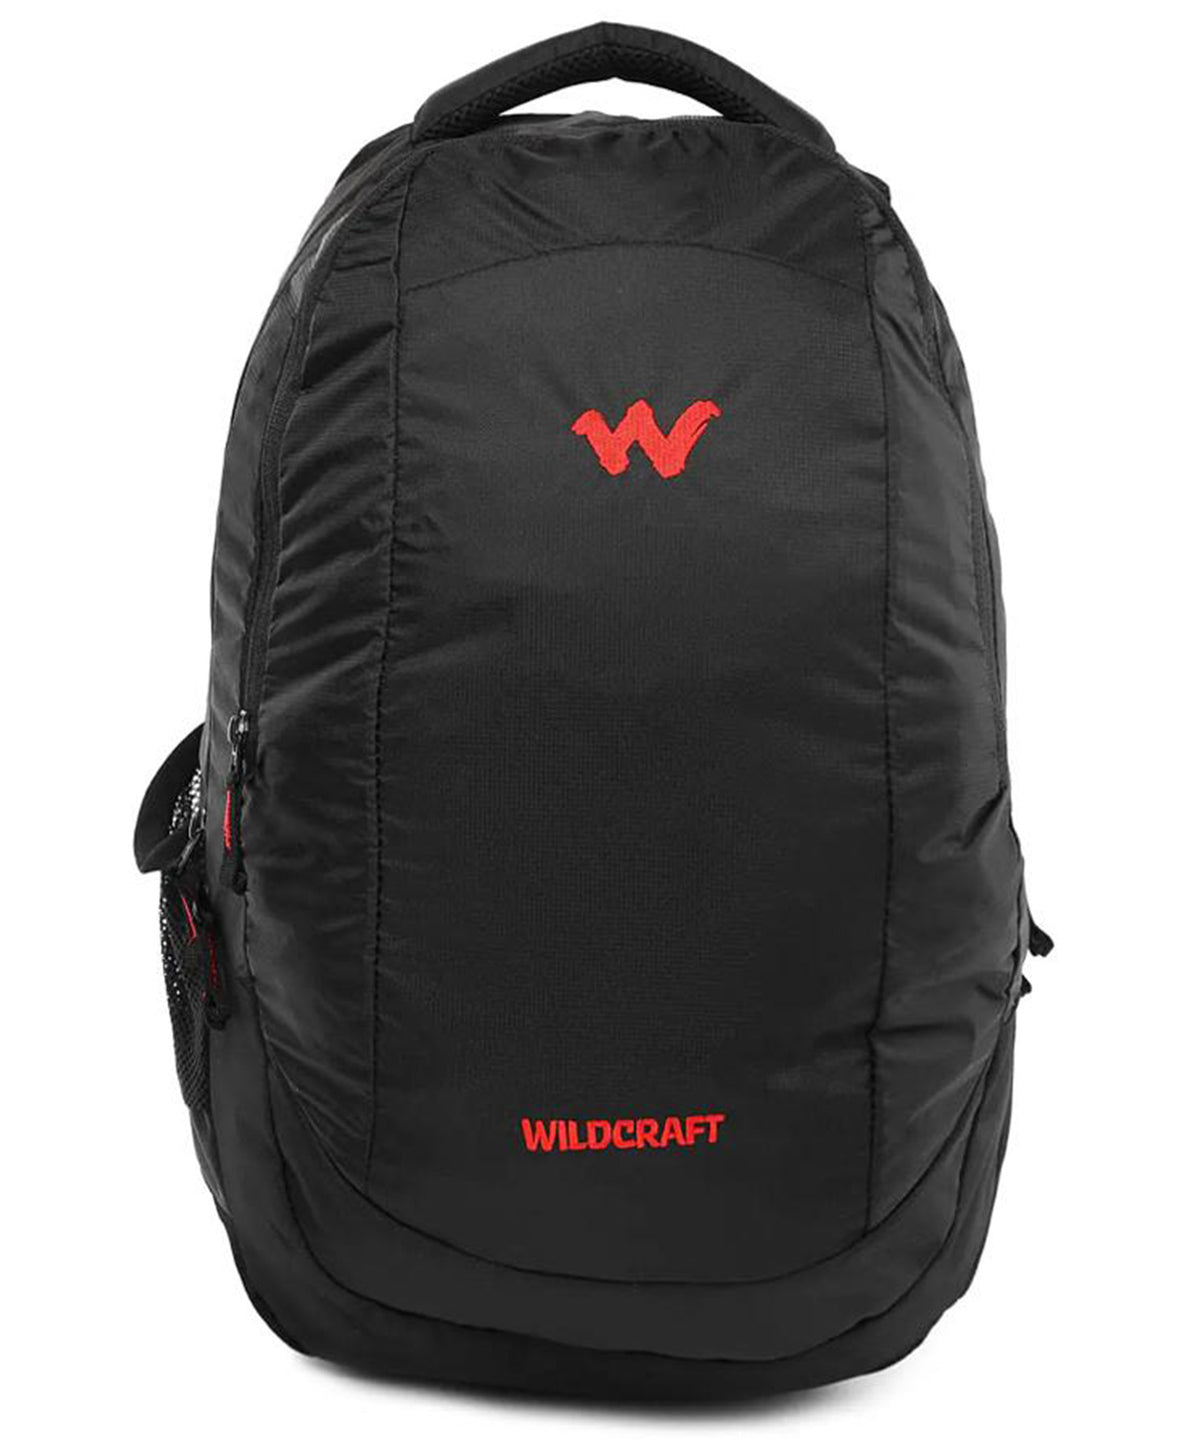 Wildcraft Peza Black 19" Laptop Backpack, PEZA BLACK